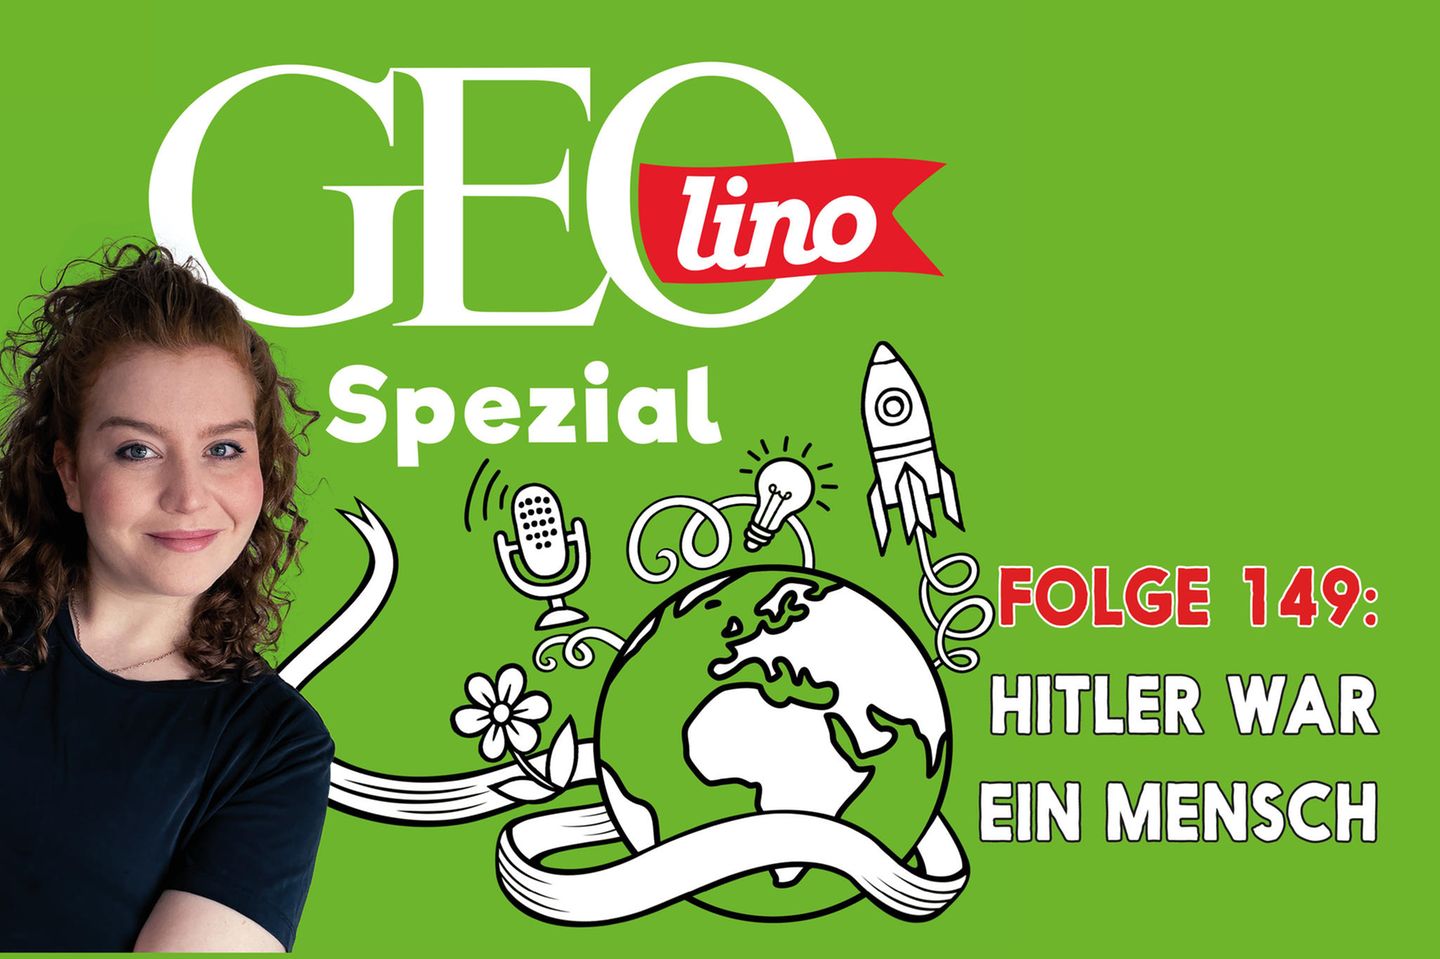 In Folge 149 unseres GEOlino Podcast: Hitler war ein Mensch